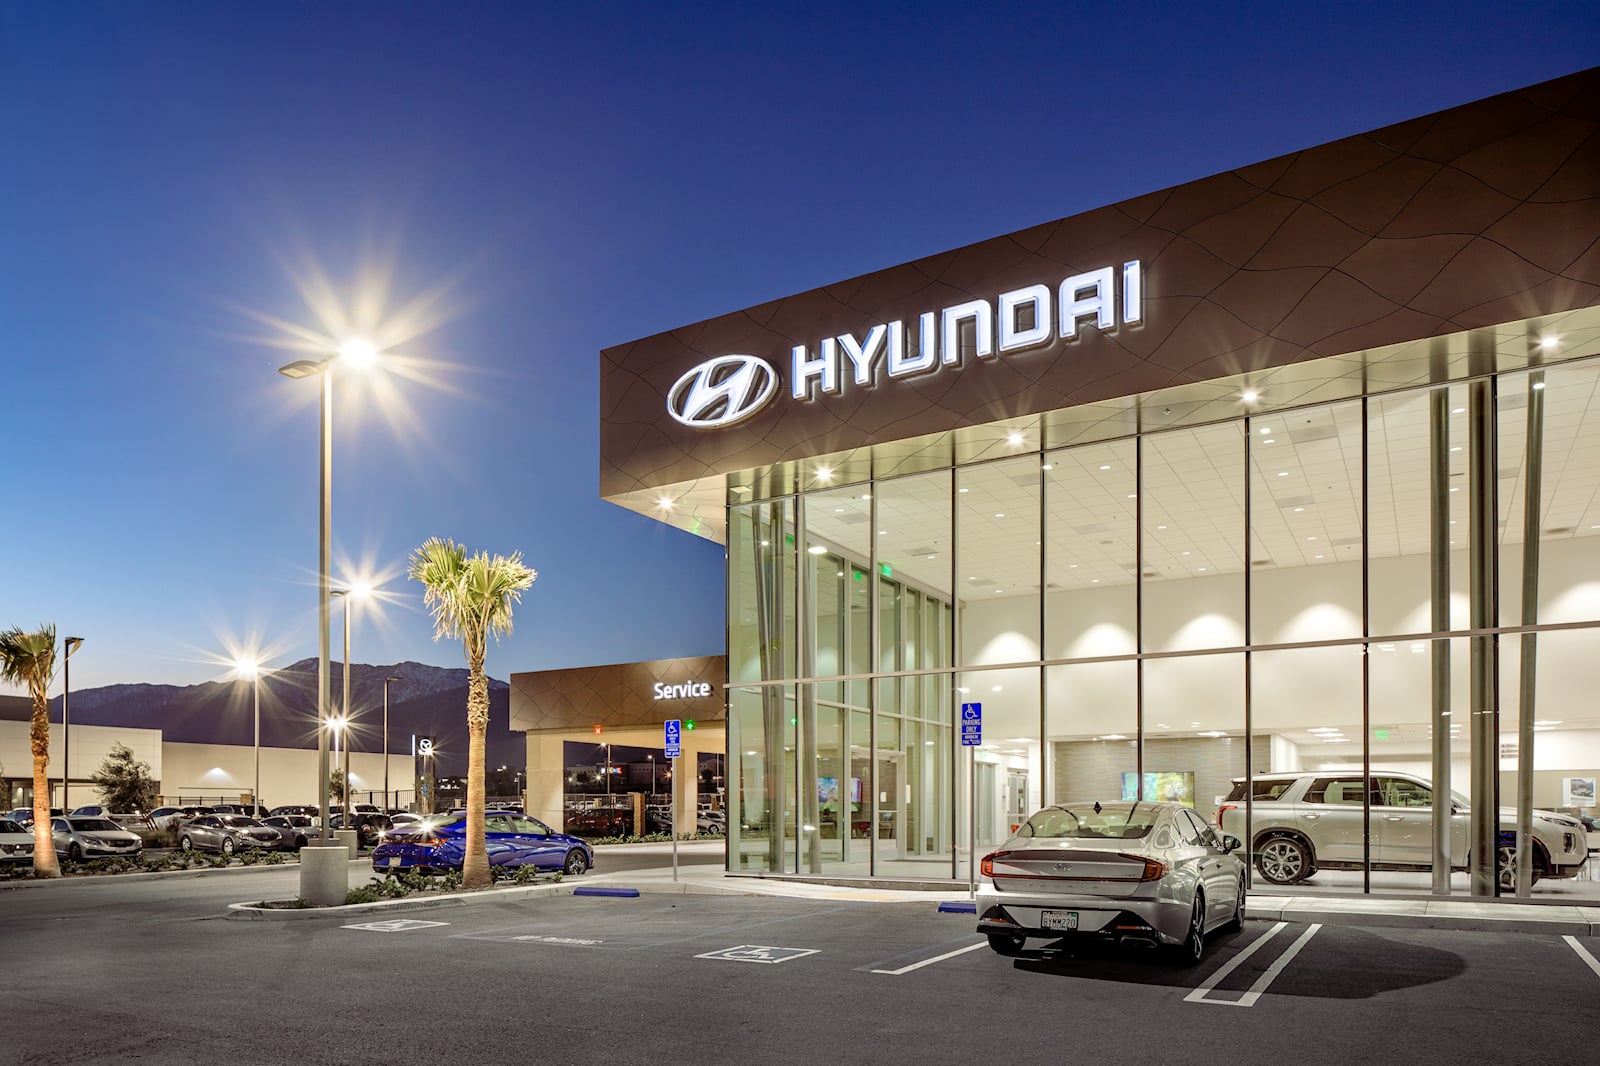 Дни Hyundai как бюджетного бренда, кажется, прошли, поскольку инновационные технологии компании и привлекательный стиль повысили ценность бренда в последние годы. История компании уходит своими корнями в 1986 год, когда она была запущена как «недорог